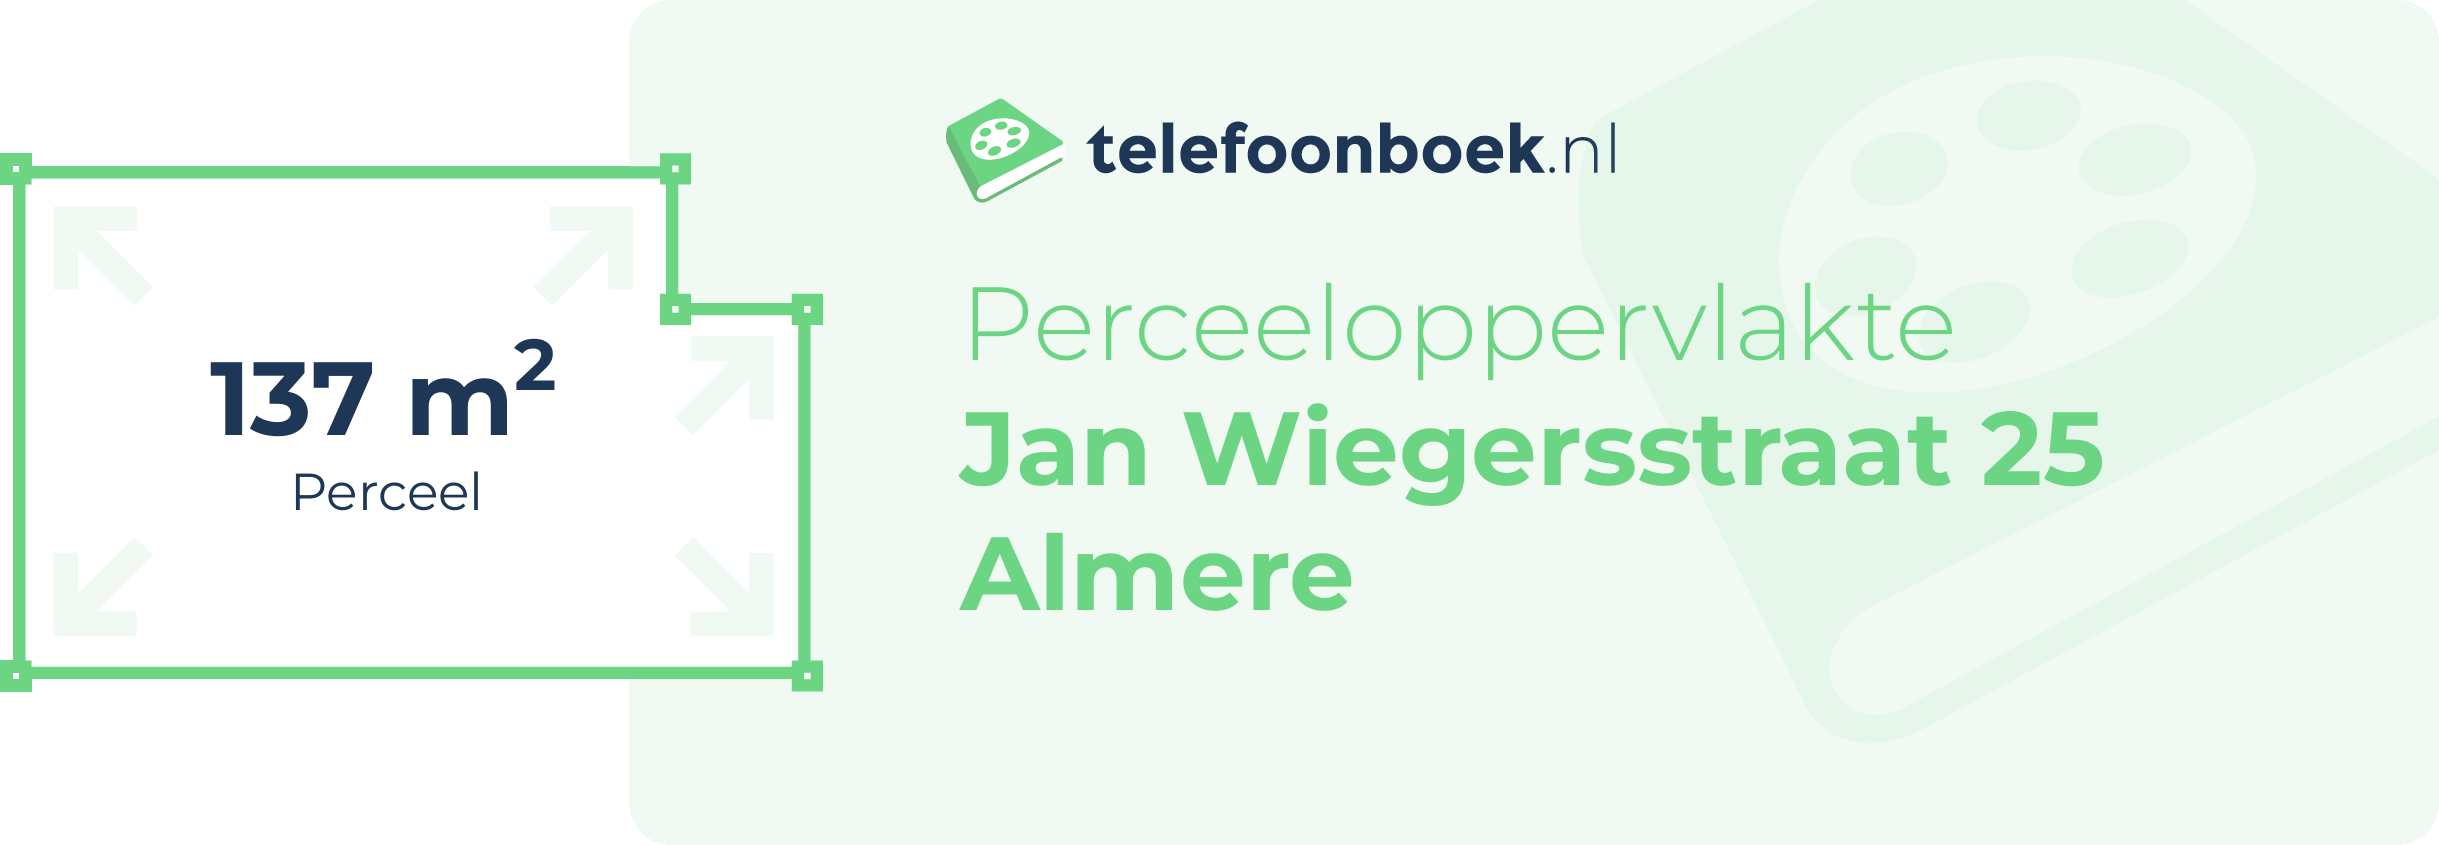 Perceeloppervlakte Jan Wiegersstraat 25 Almere